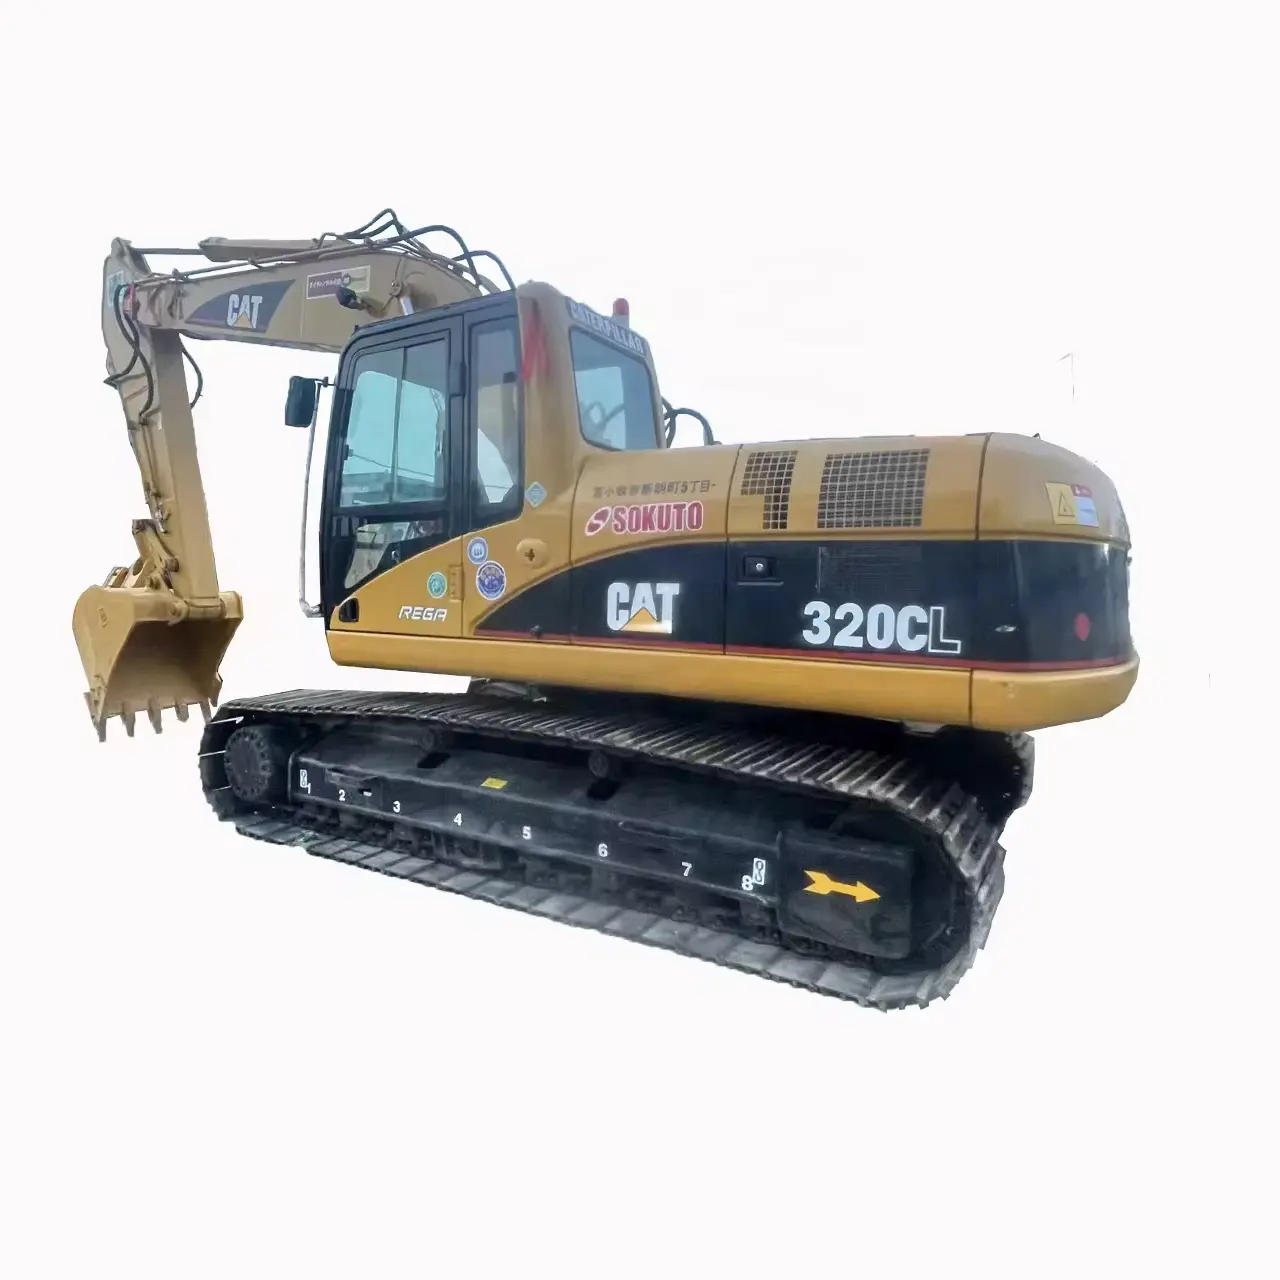 L'escavatore usato 320c con la progettazione originale è in vendita con un prezzo più conveniente che altri fabbrica